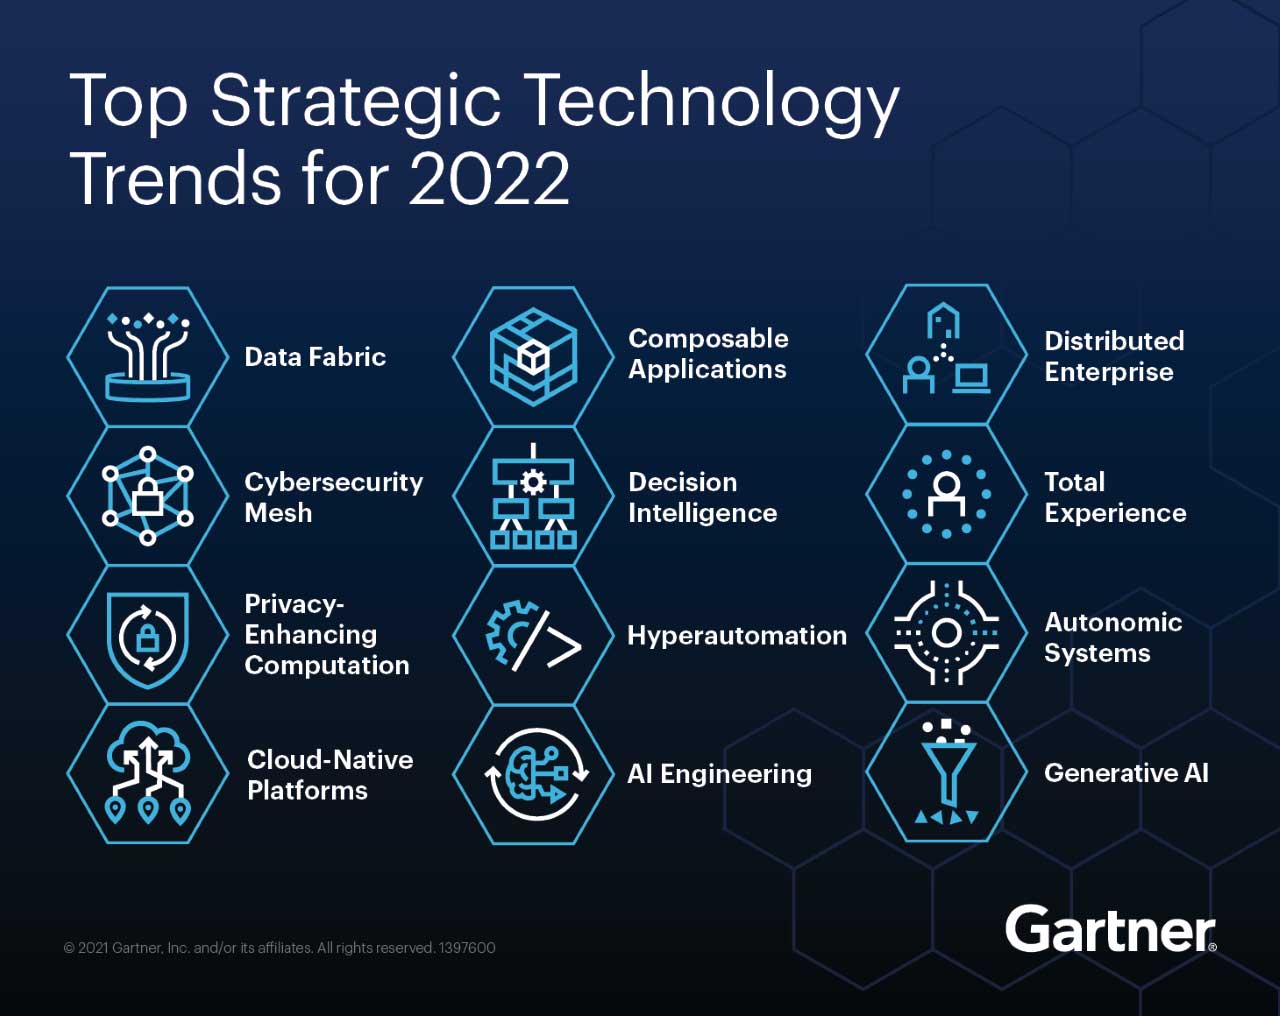 Top Strategic Technology Trends for 2022 - Fonte: Gartner